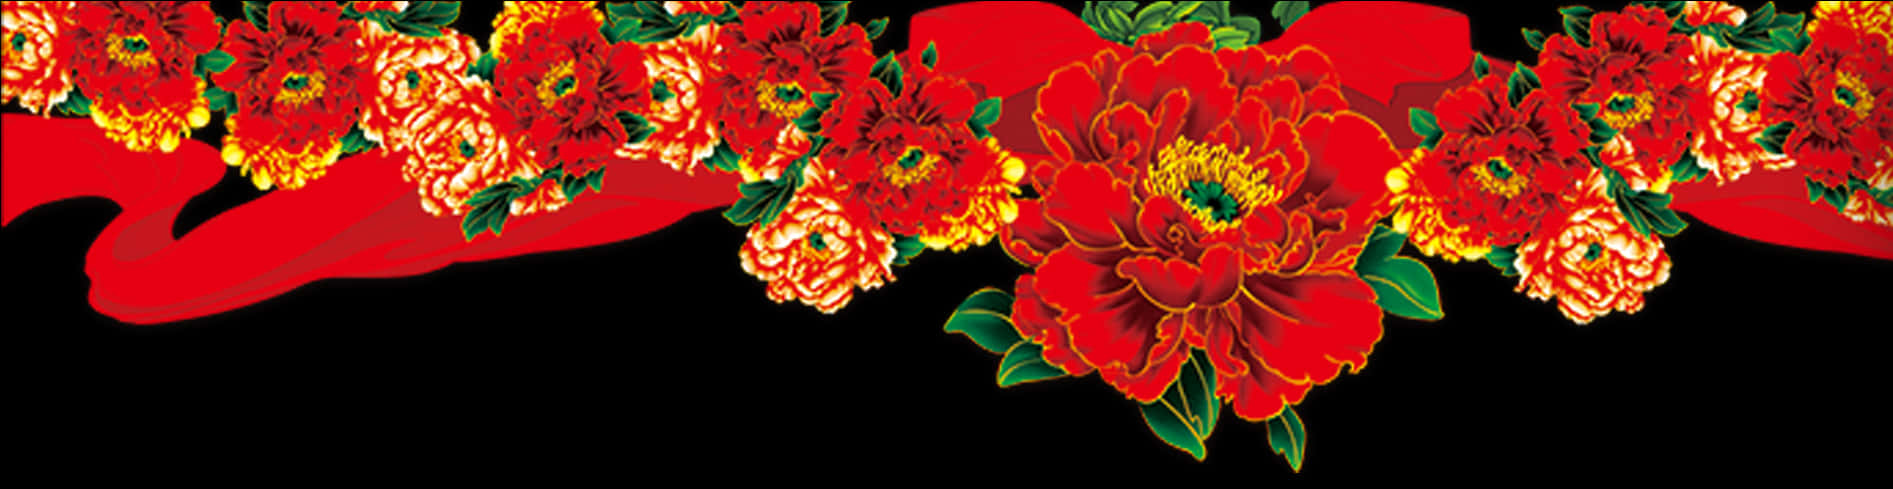 Vibrant Floral Banner Design